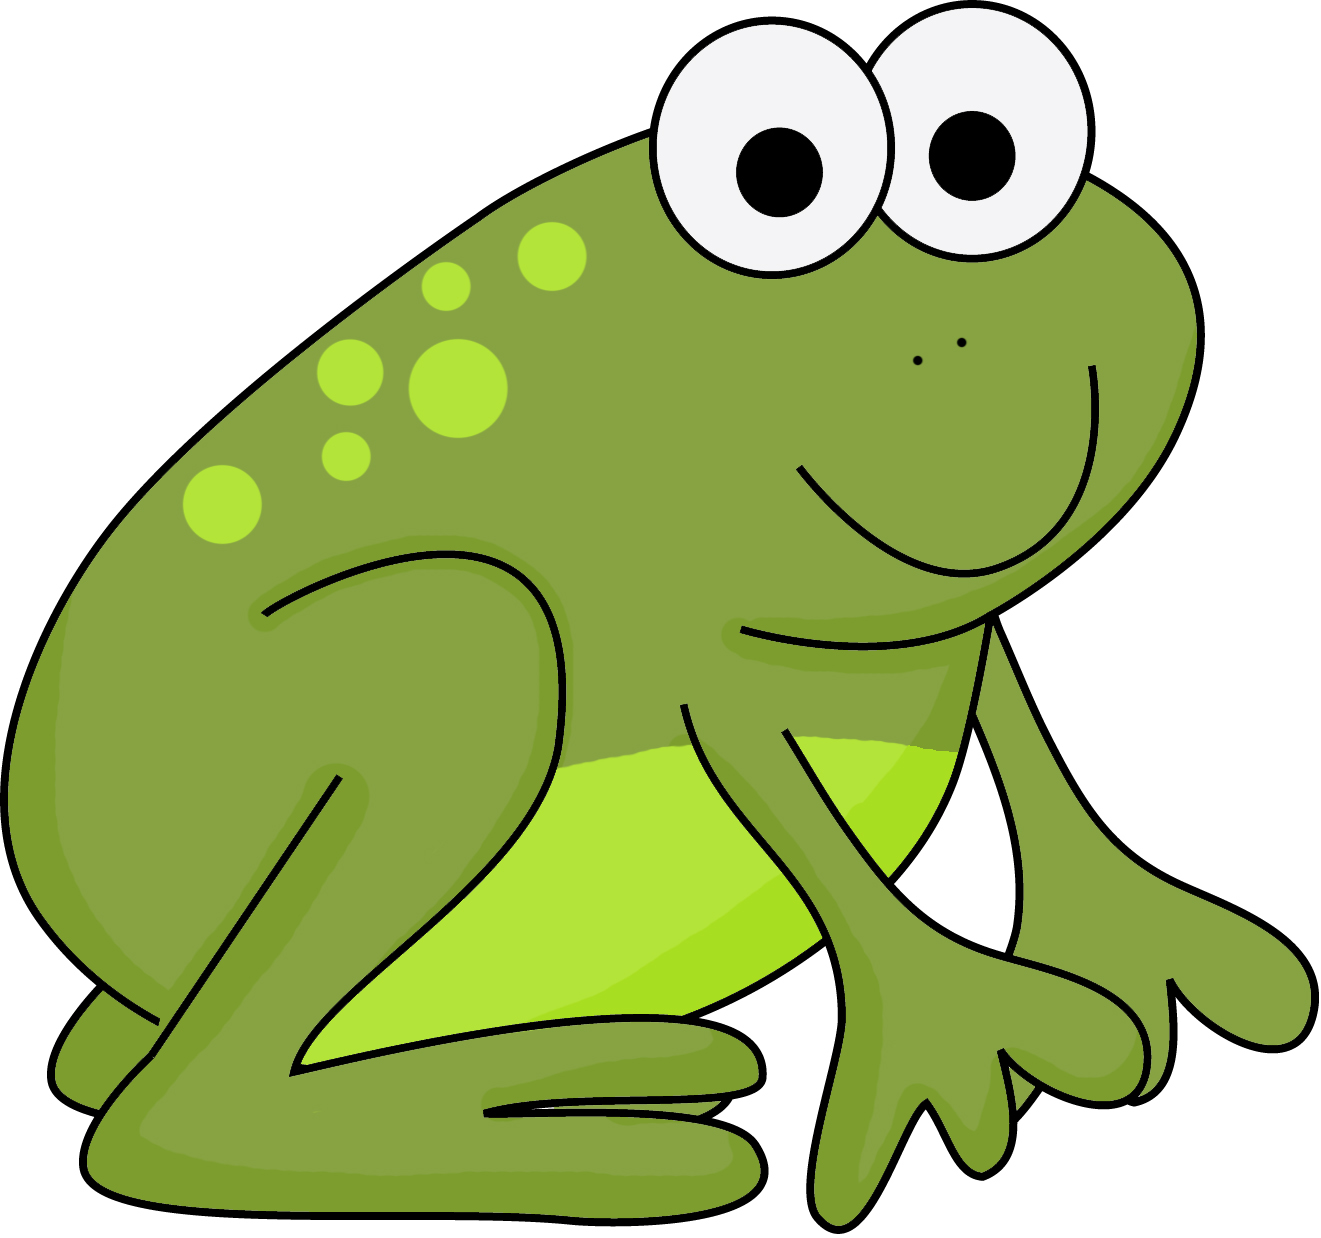 Cute Little Green Frog - Free